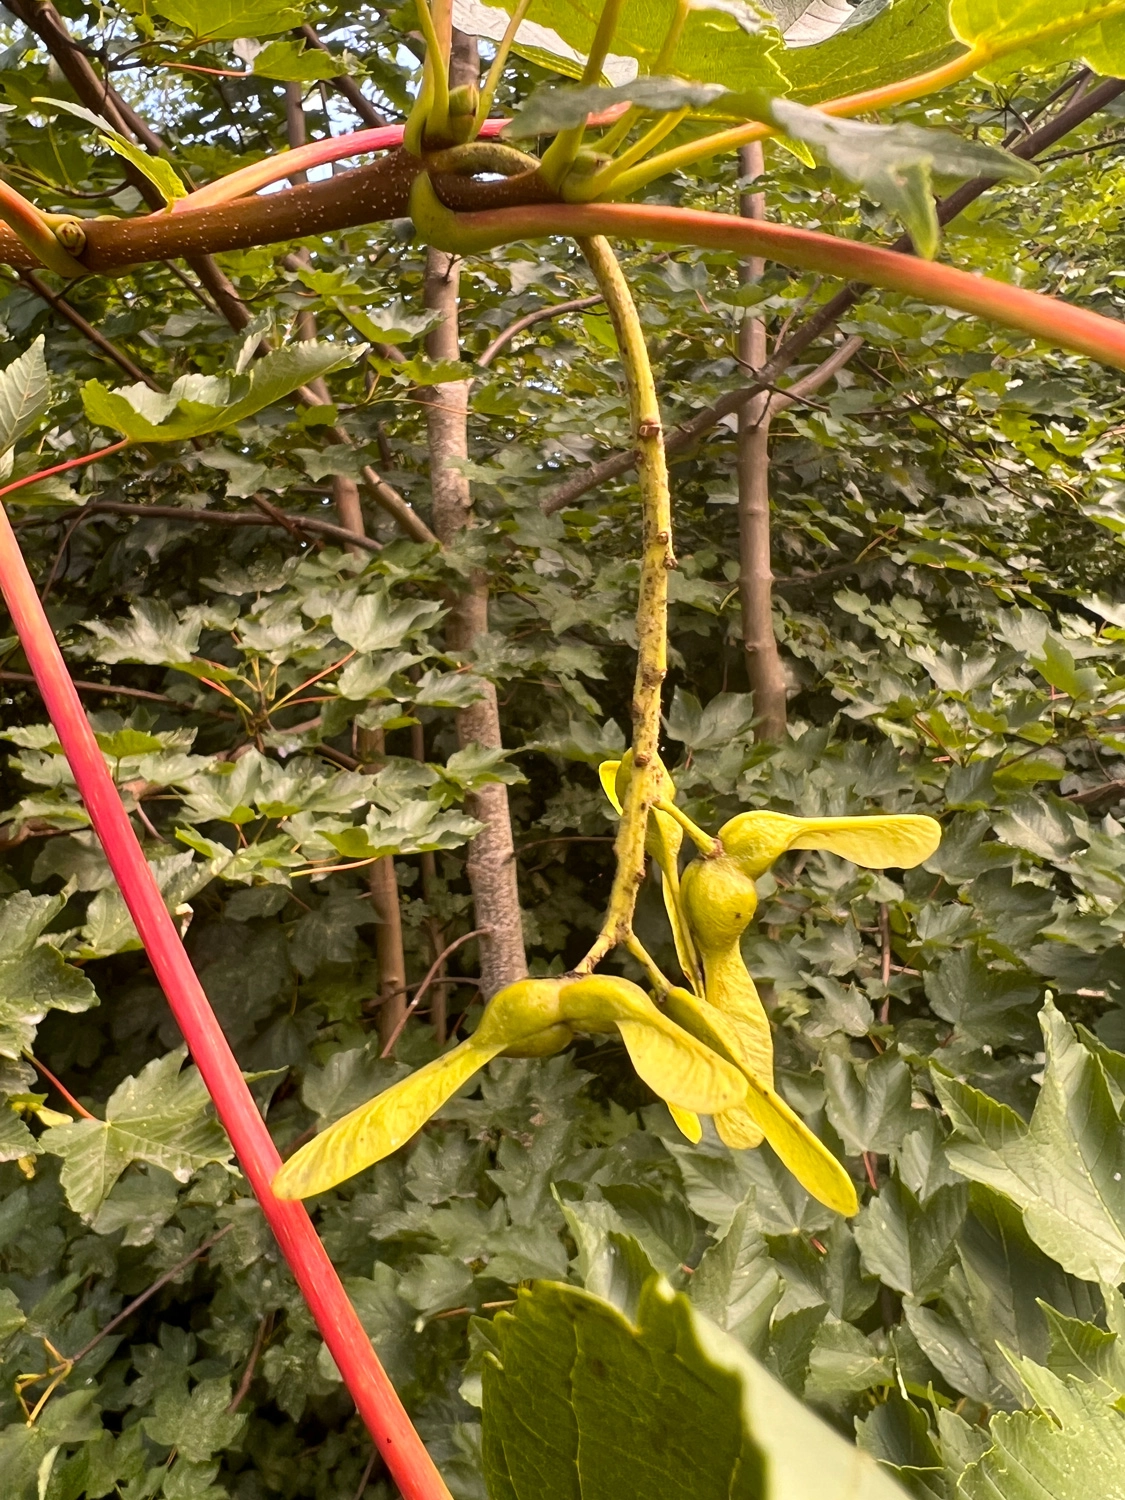 Ahorns frugter ligner propeller og kan flyve hvis du kaster dem op i luften. Foto Janne Bavnhøj